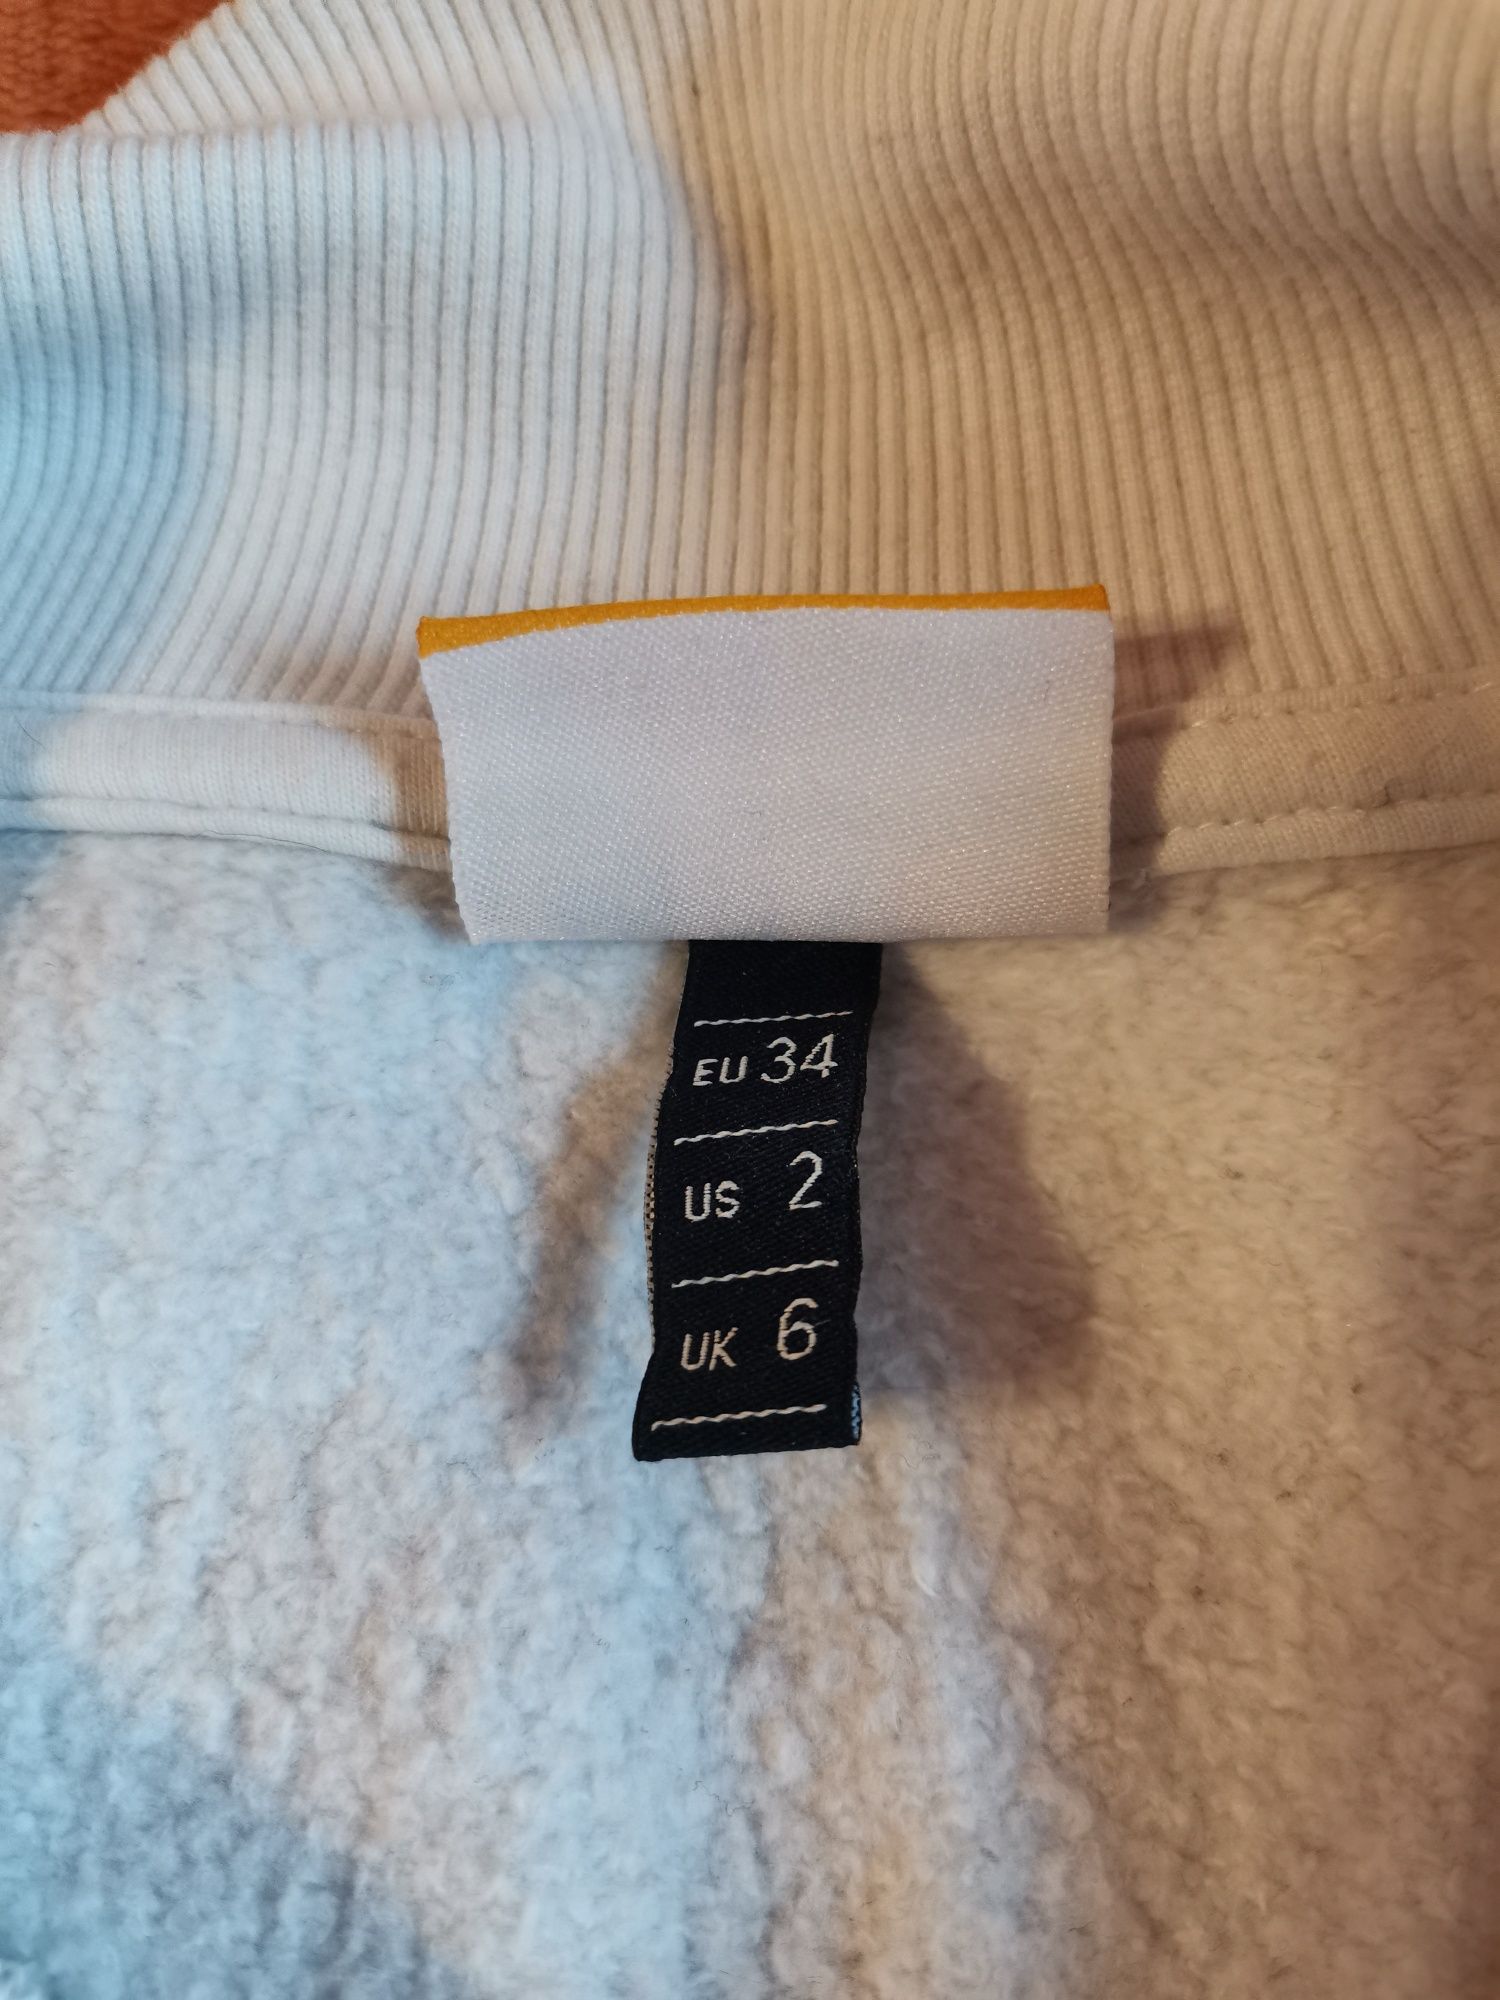 Детска блуза/суитшърт Ellesse размер EU 34 (ХС), US 2, UK 6